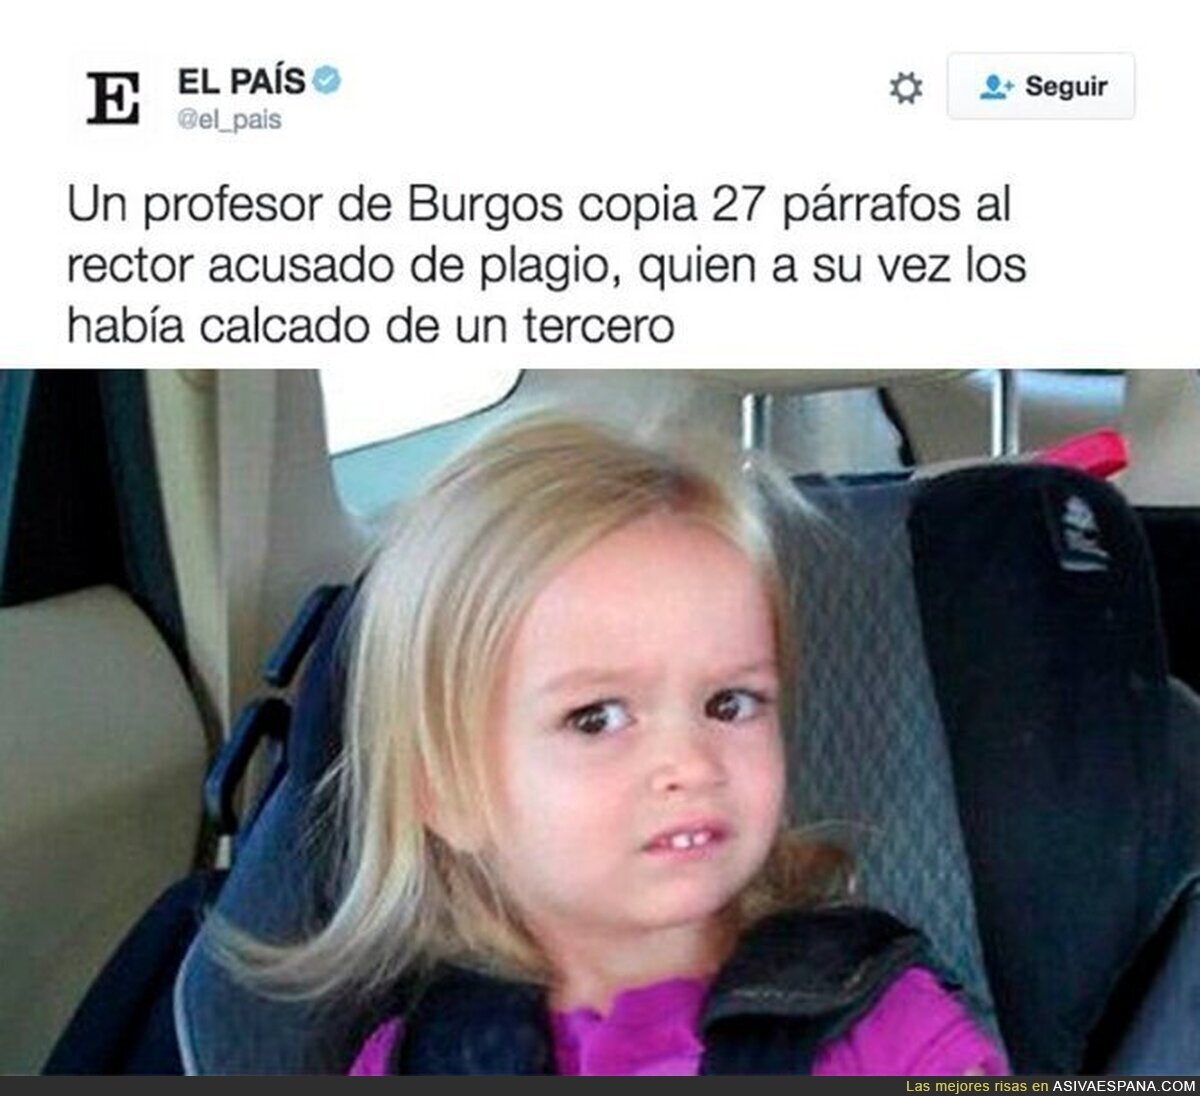 El nivel de la educación española en una noticia